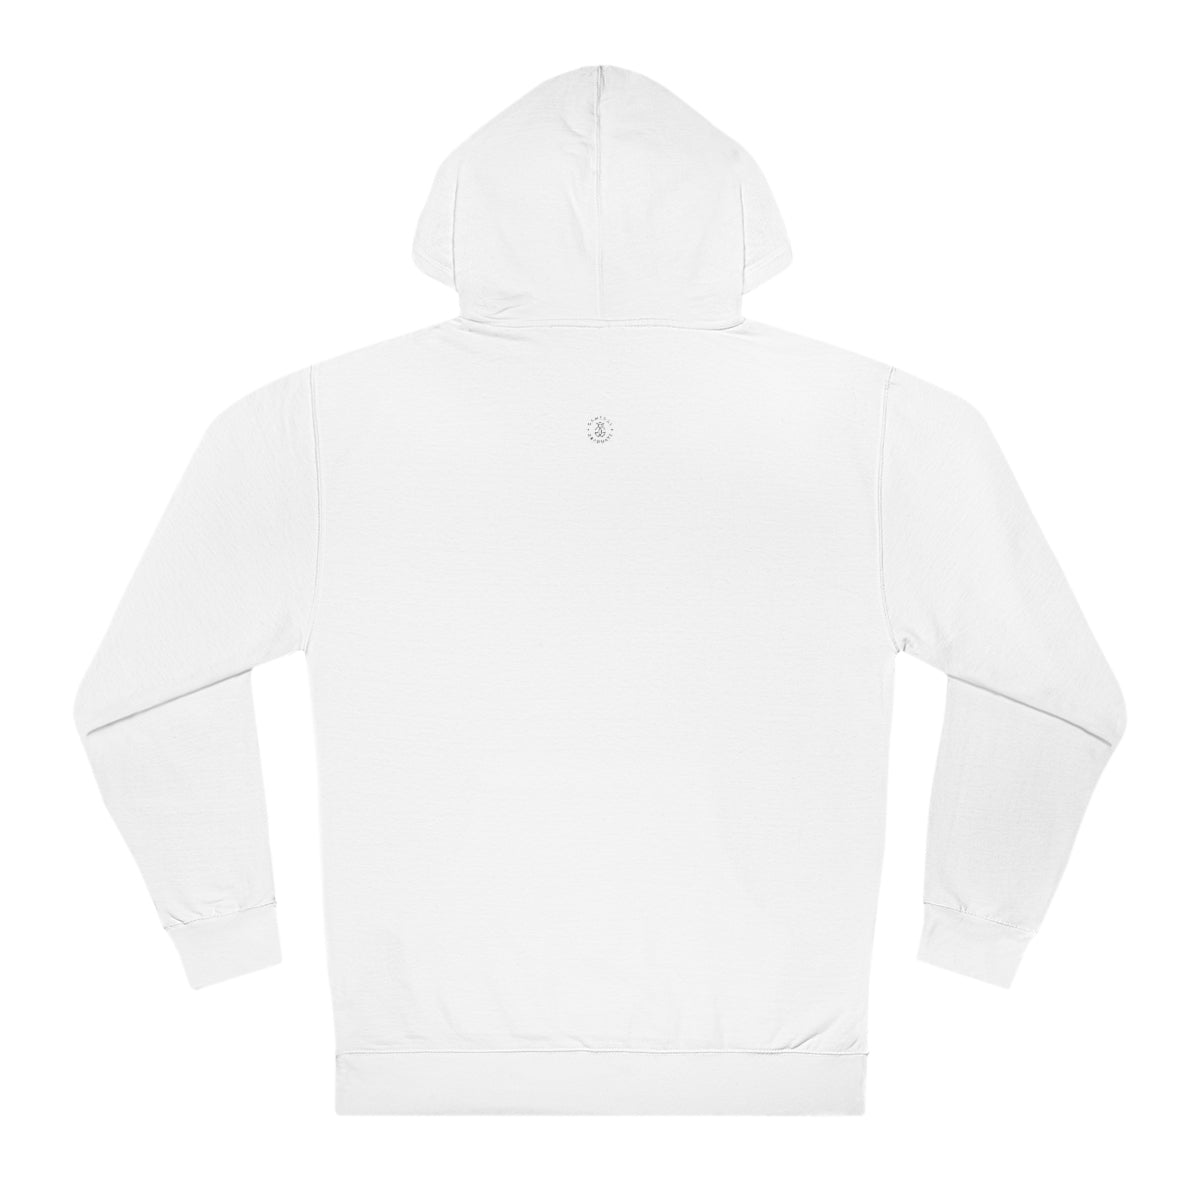 Baylor Hooded Sweatshirt - GG - ITC